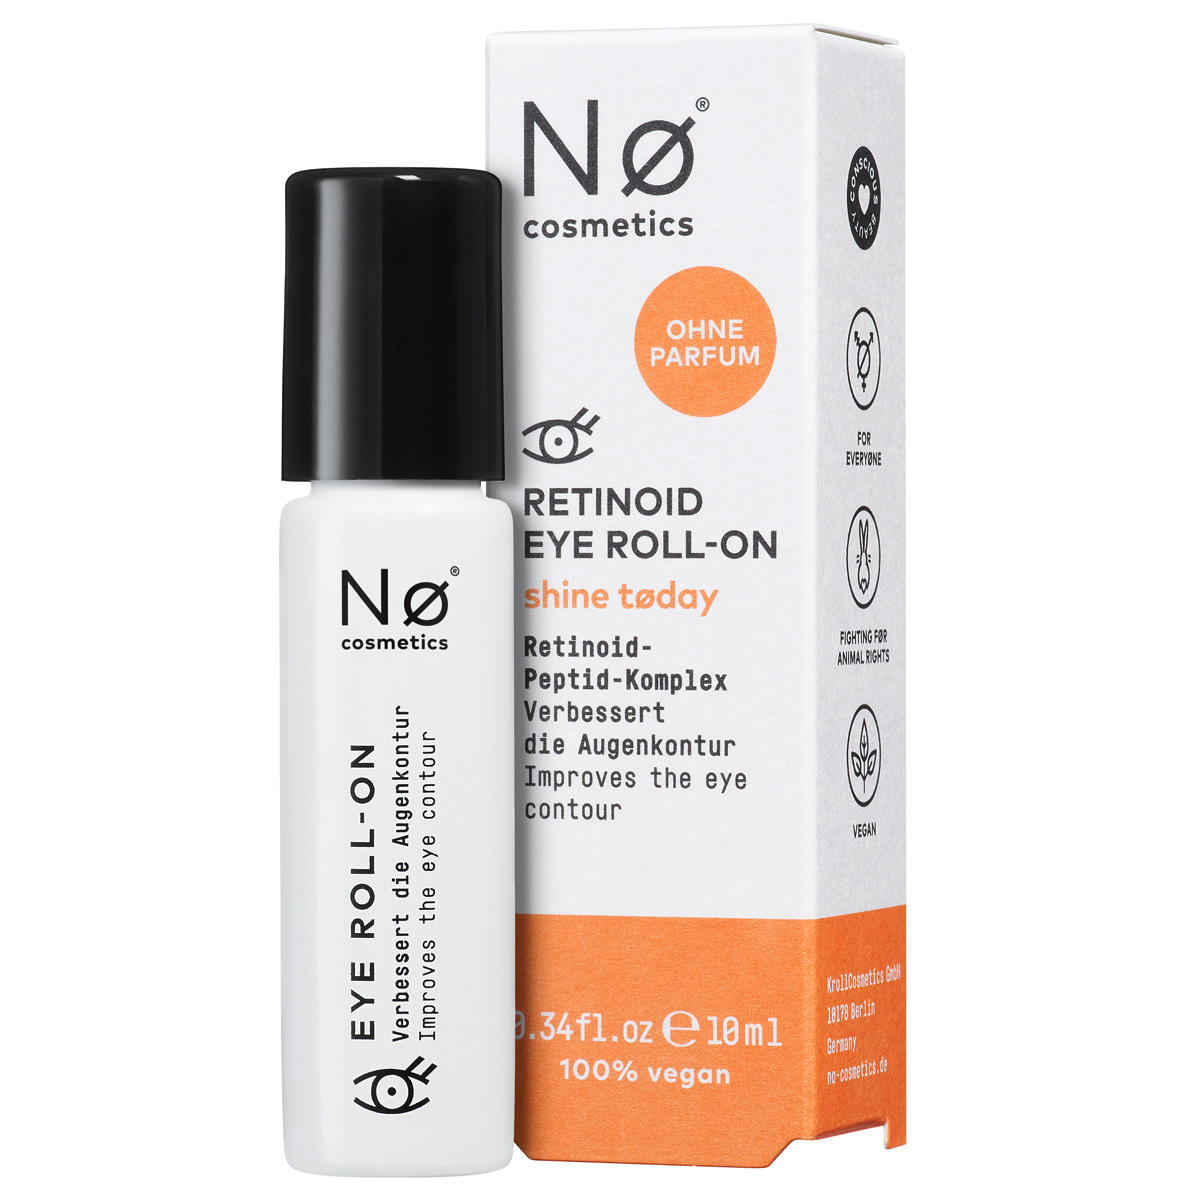 Nø Cosmetics shine tøday Retinoid Eye Roll-On 10 ml - 1